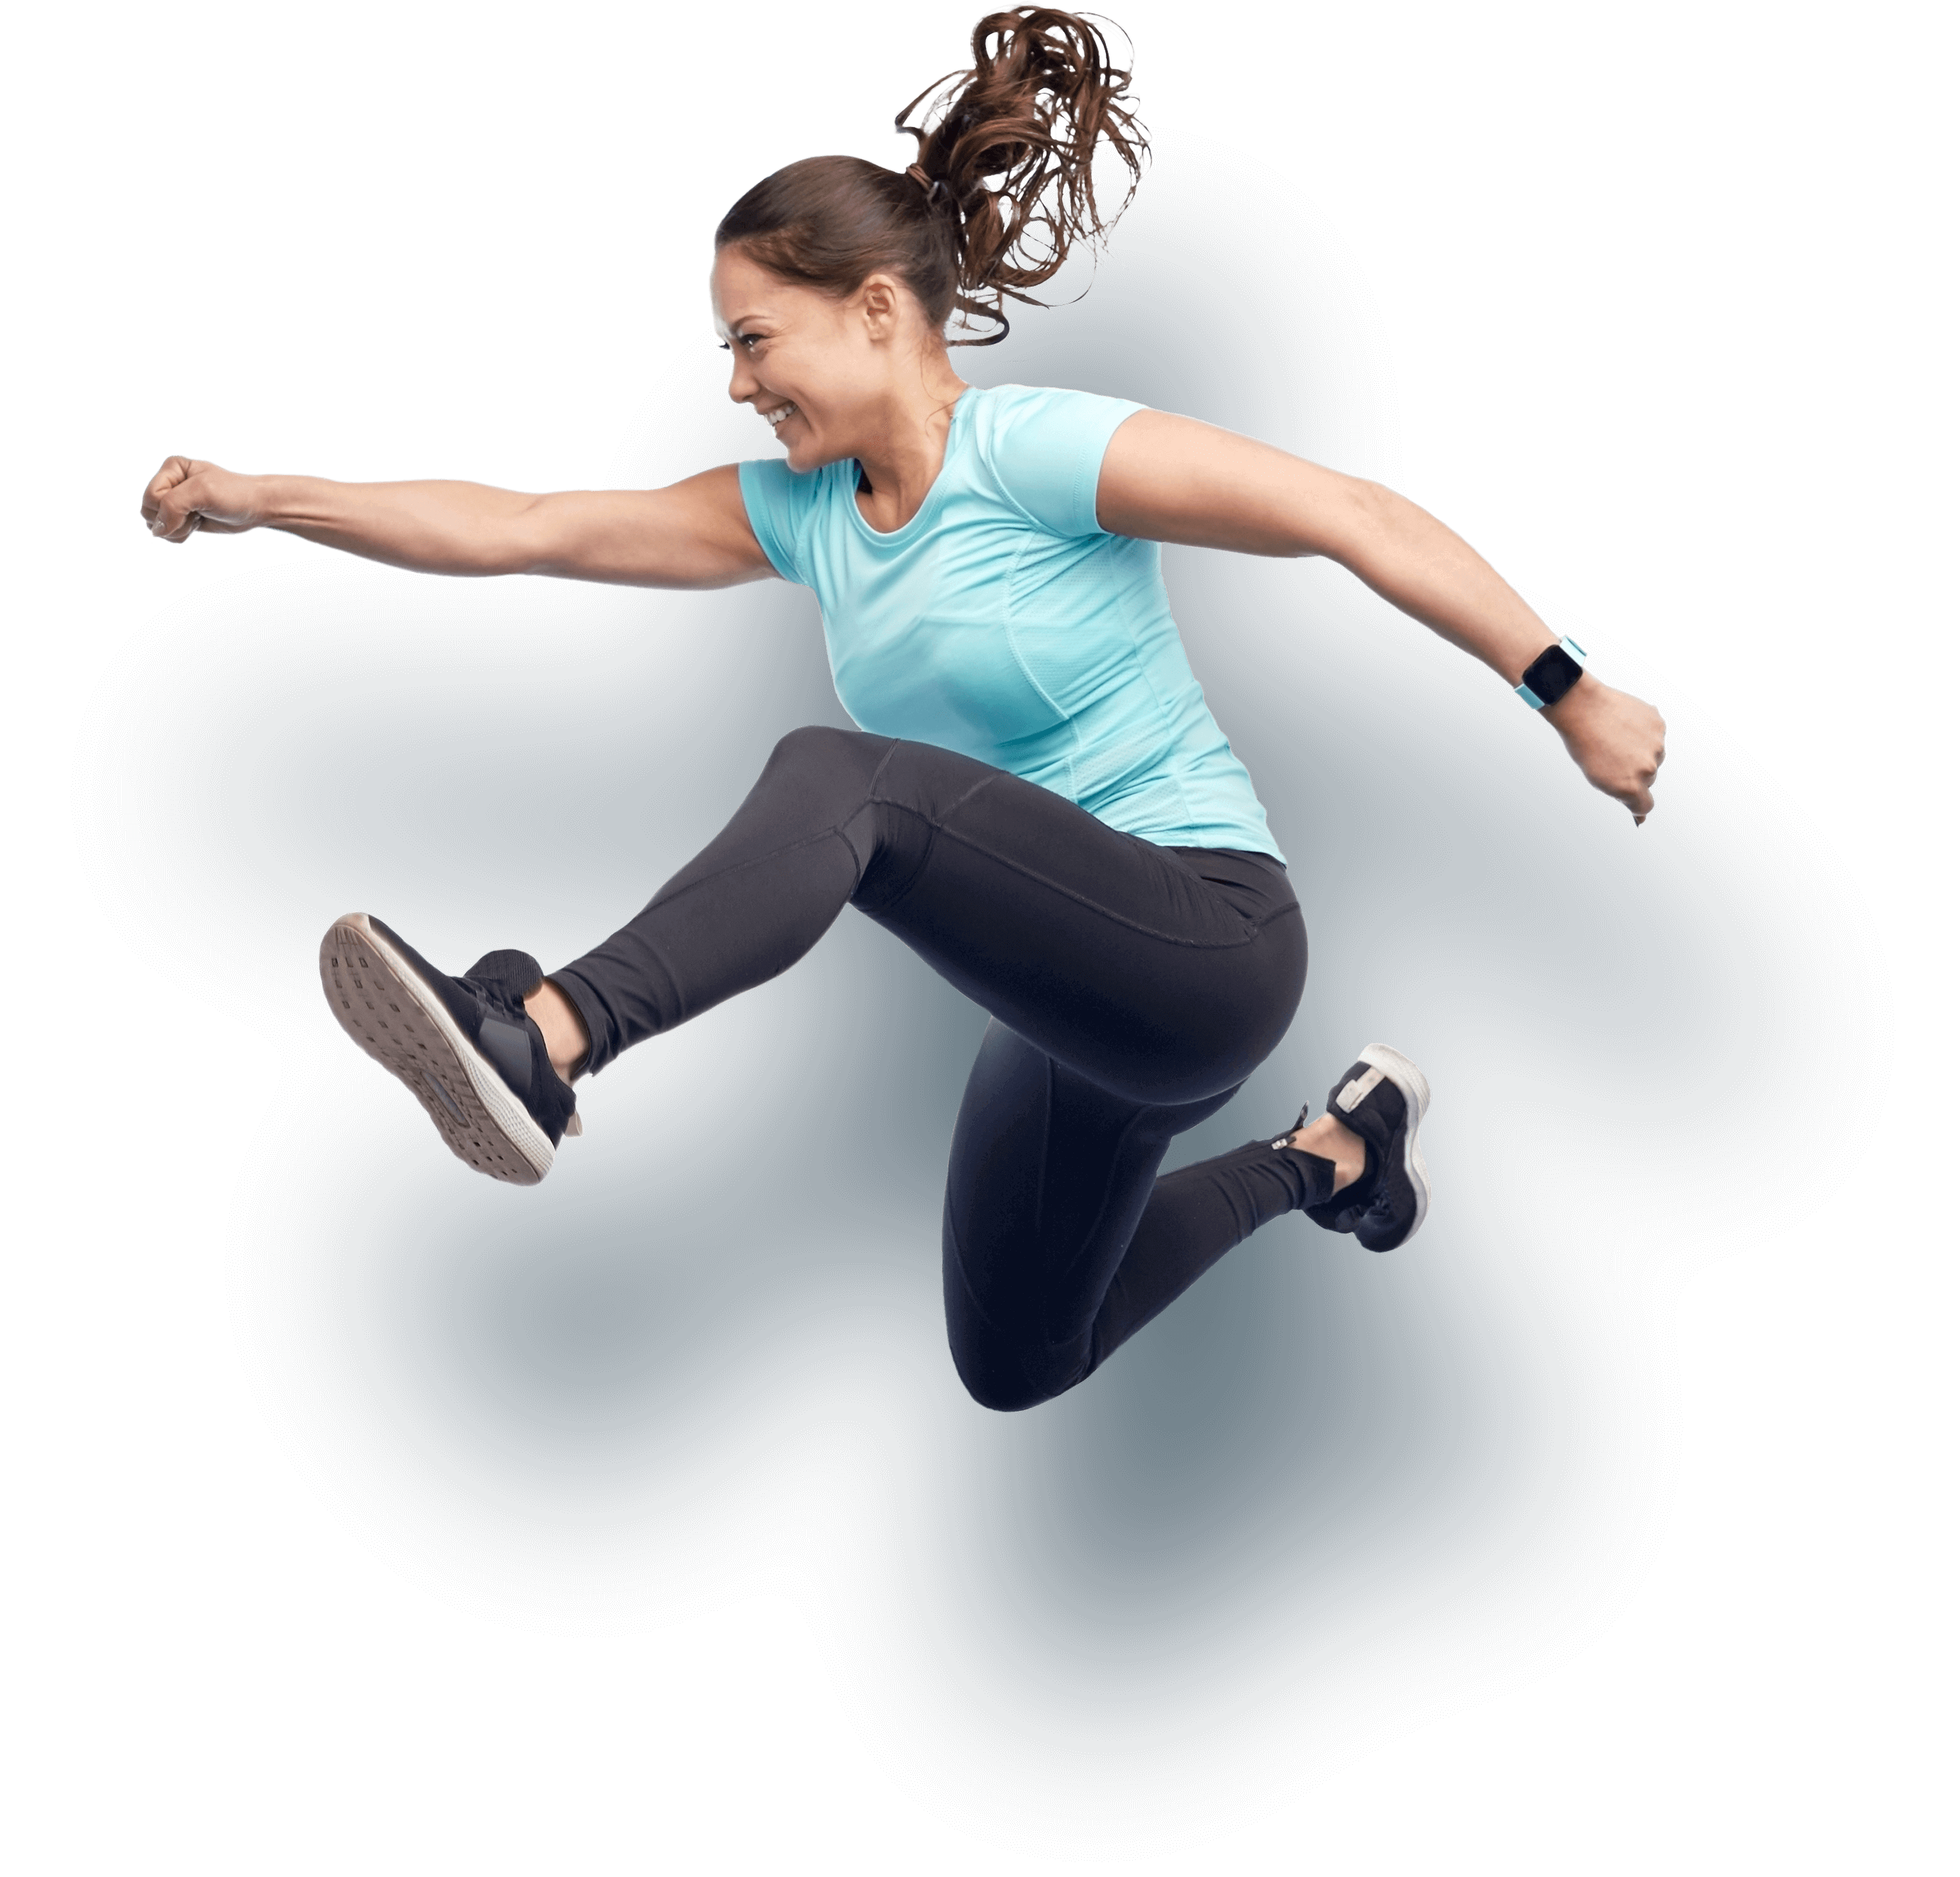 Фитнес девушка в прыжке. Девушка прыгает. Спорт фитнес. В прыжке.